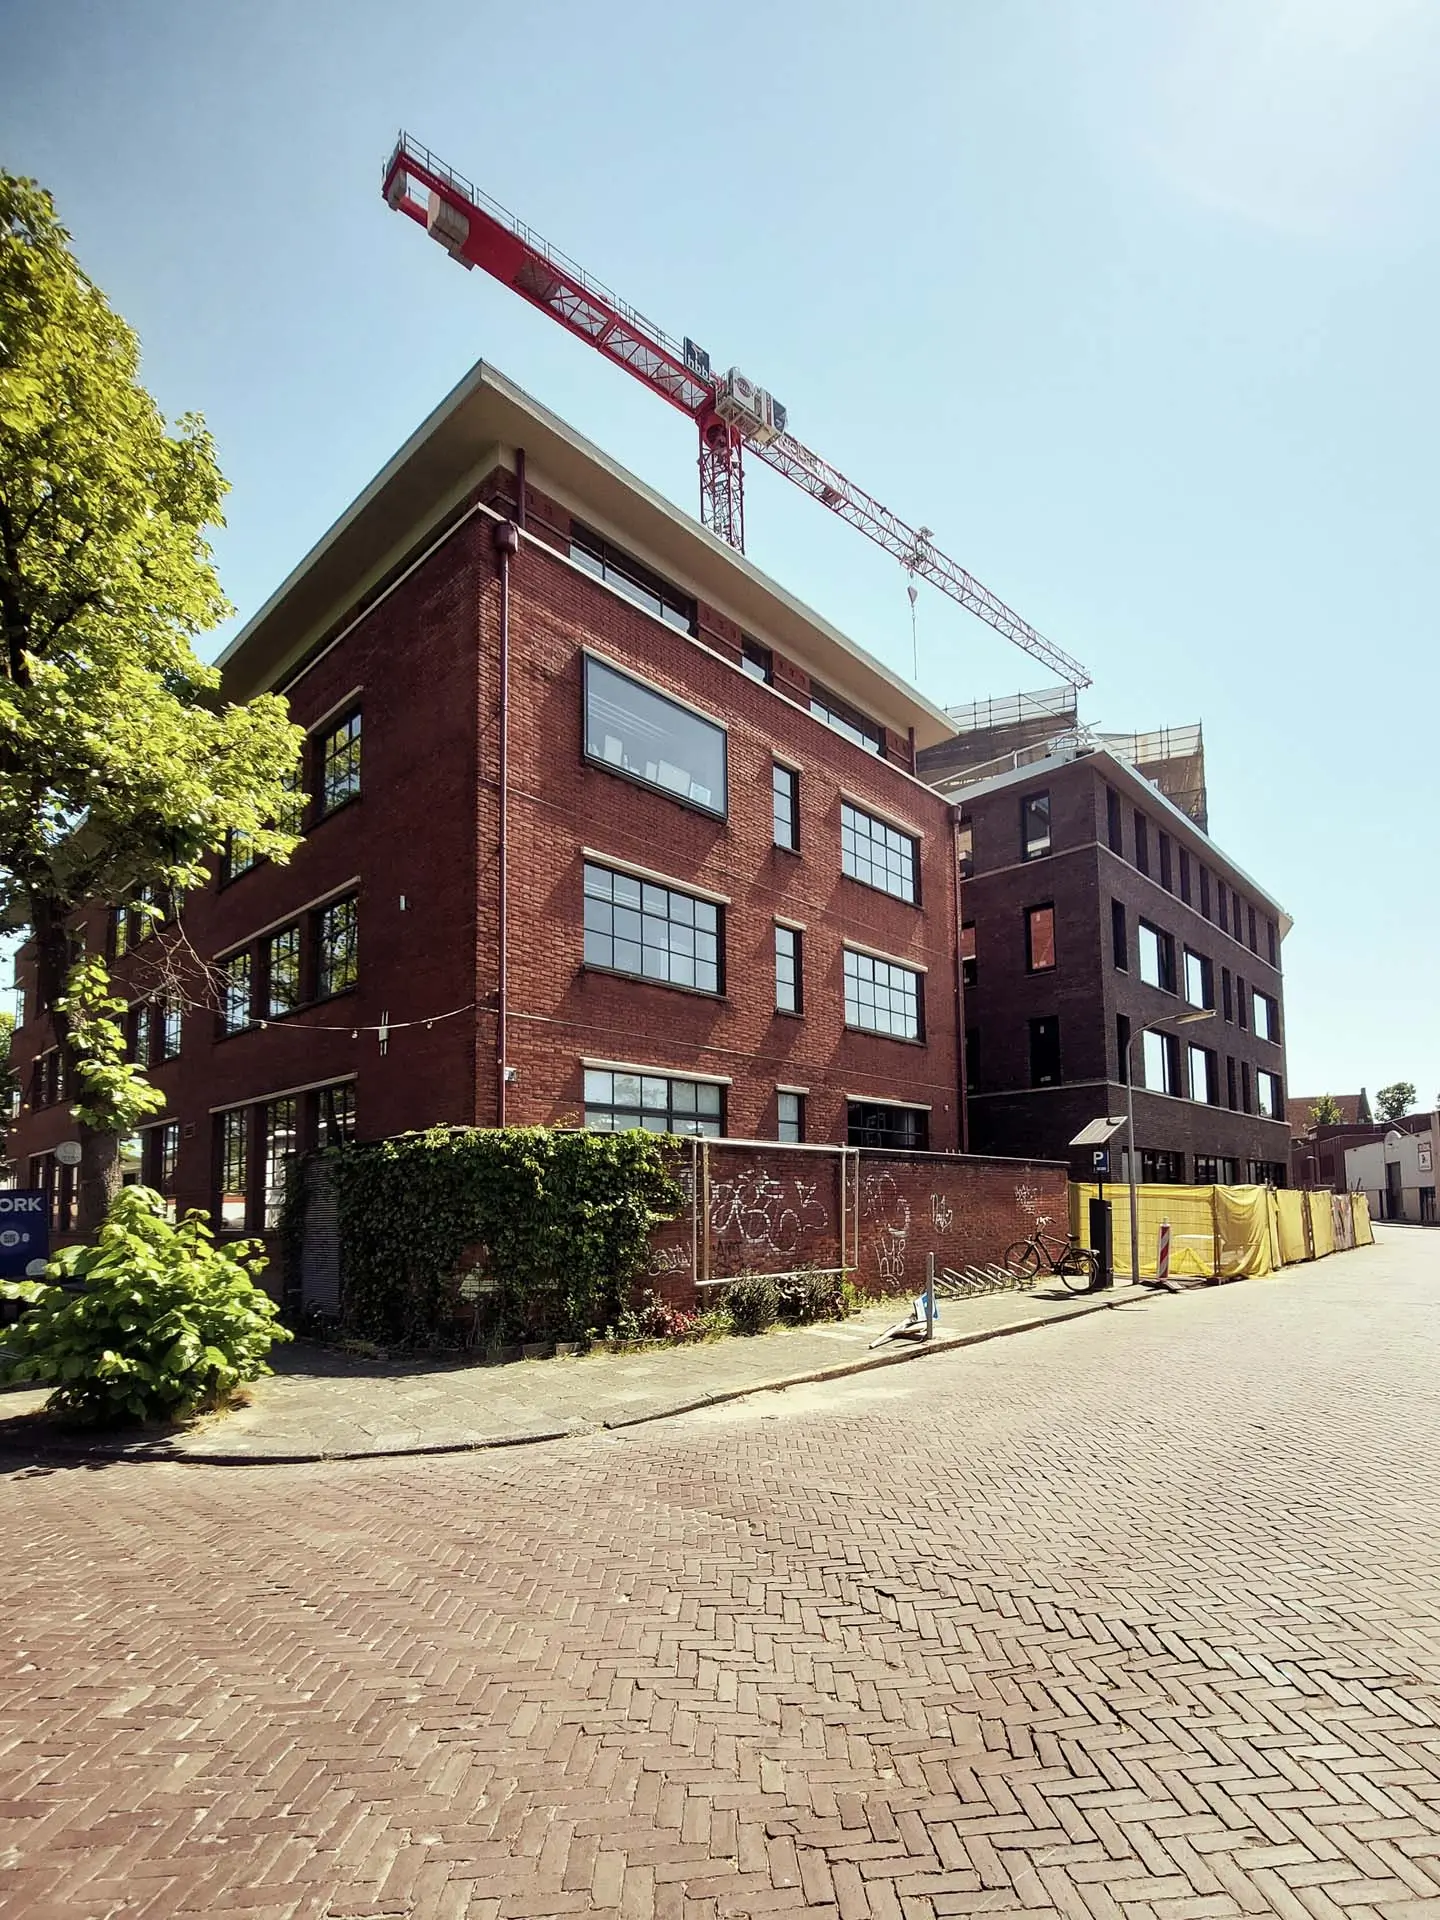 ENZO architectuur N interieur - gonnetstraat - Amsterdam - Haarlem - haarlemmermeer - nieuwbouw - exterieur - hijskraan - natuur - bouw